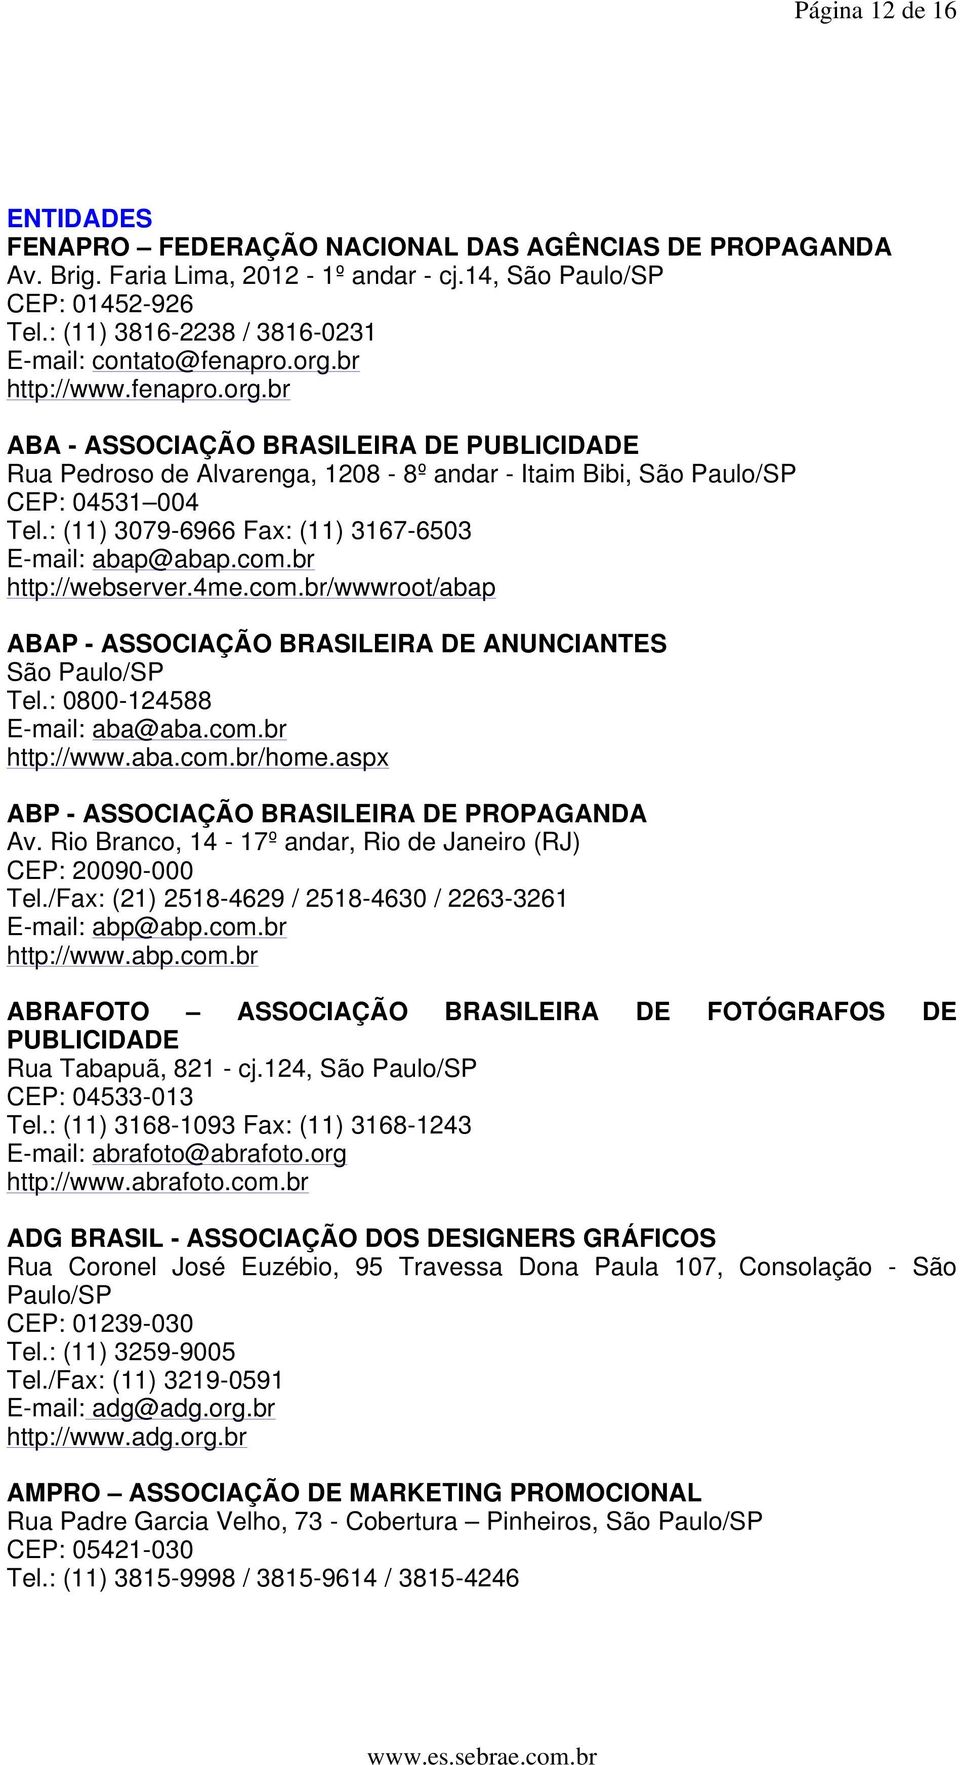 : (11) 3079-6966 Fax: (11) 3167-6503 E-mail: abap@abap.com.br http://webserver.4me.com.br/wwwroot/abap ABAP - ASSOCIAÇÃO BRASILEIRA DE ANUNCIANTES São Paulo/SP Tel.: 0800-124588 E-mail: aba@aba.com.br http://www.